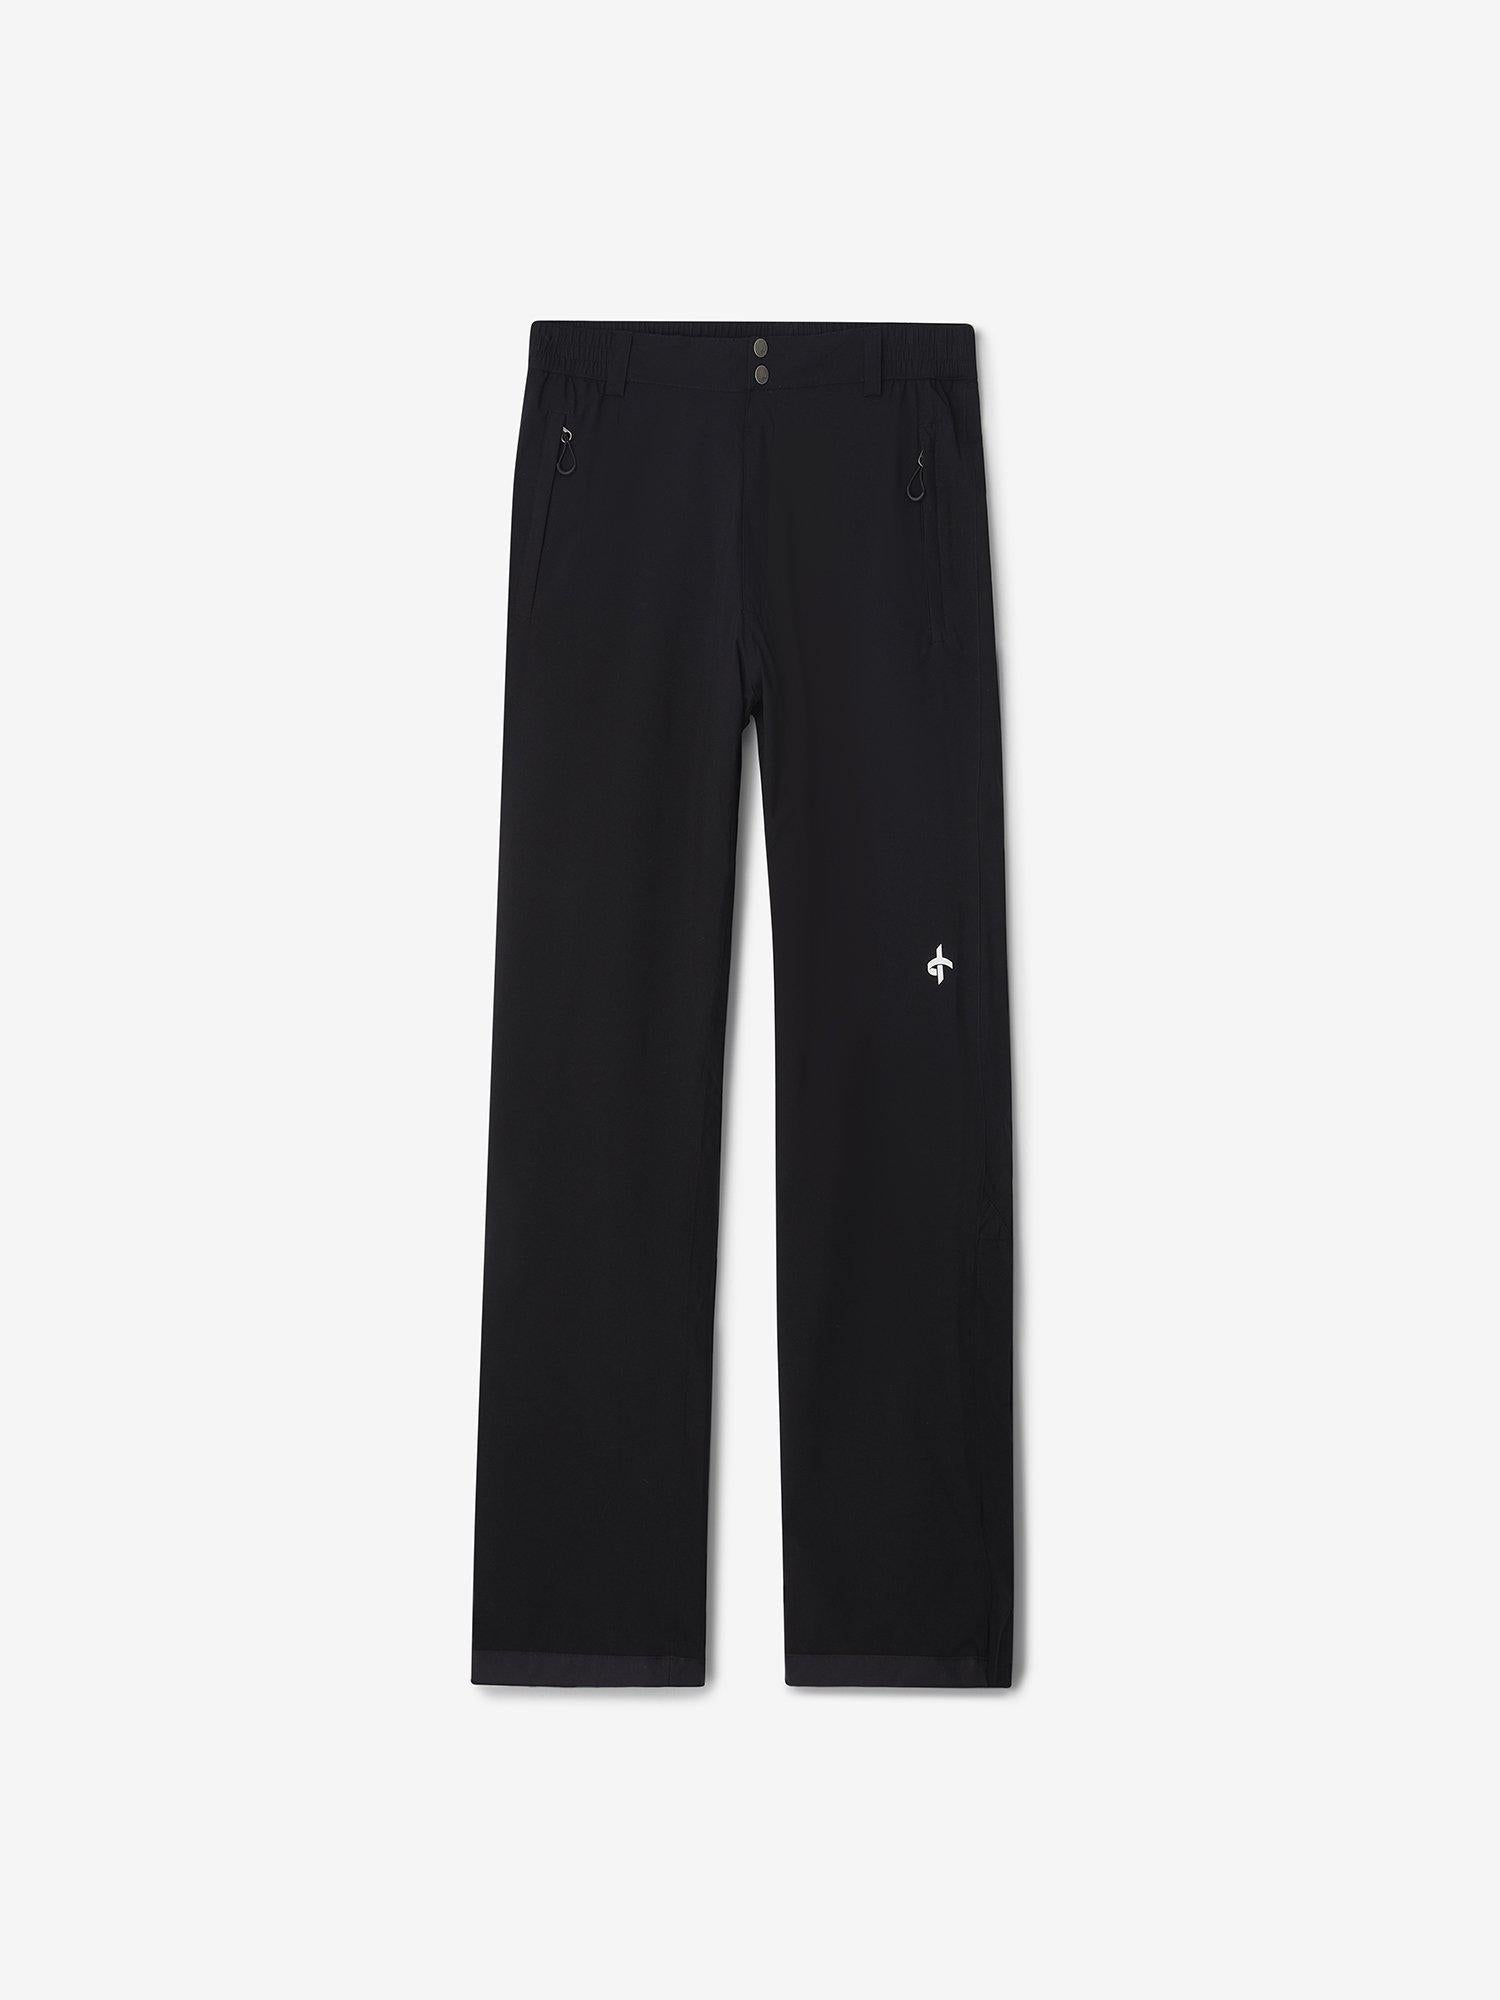 M CLOUD PANTS RE - Black – Cross Sportswear Intl